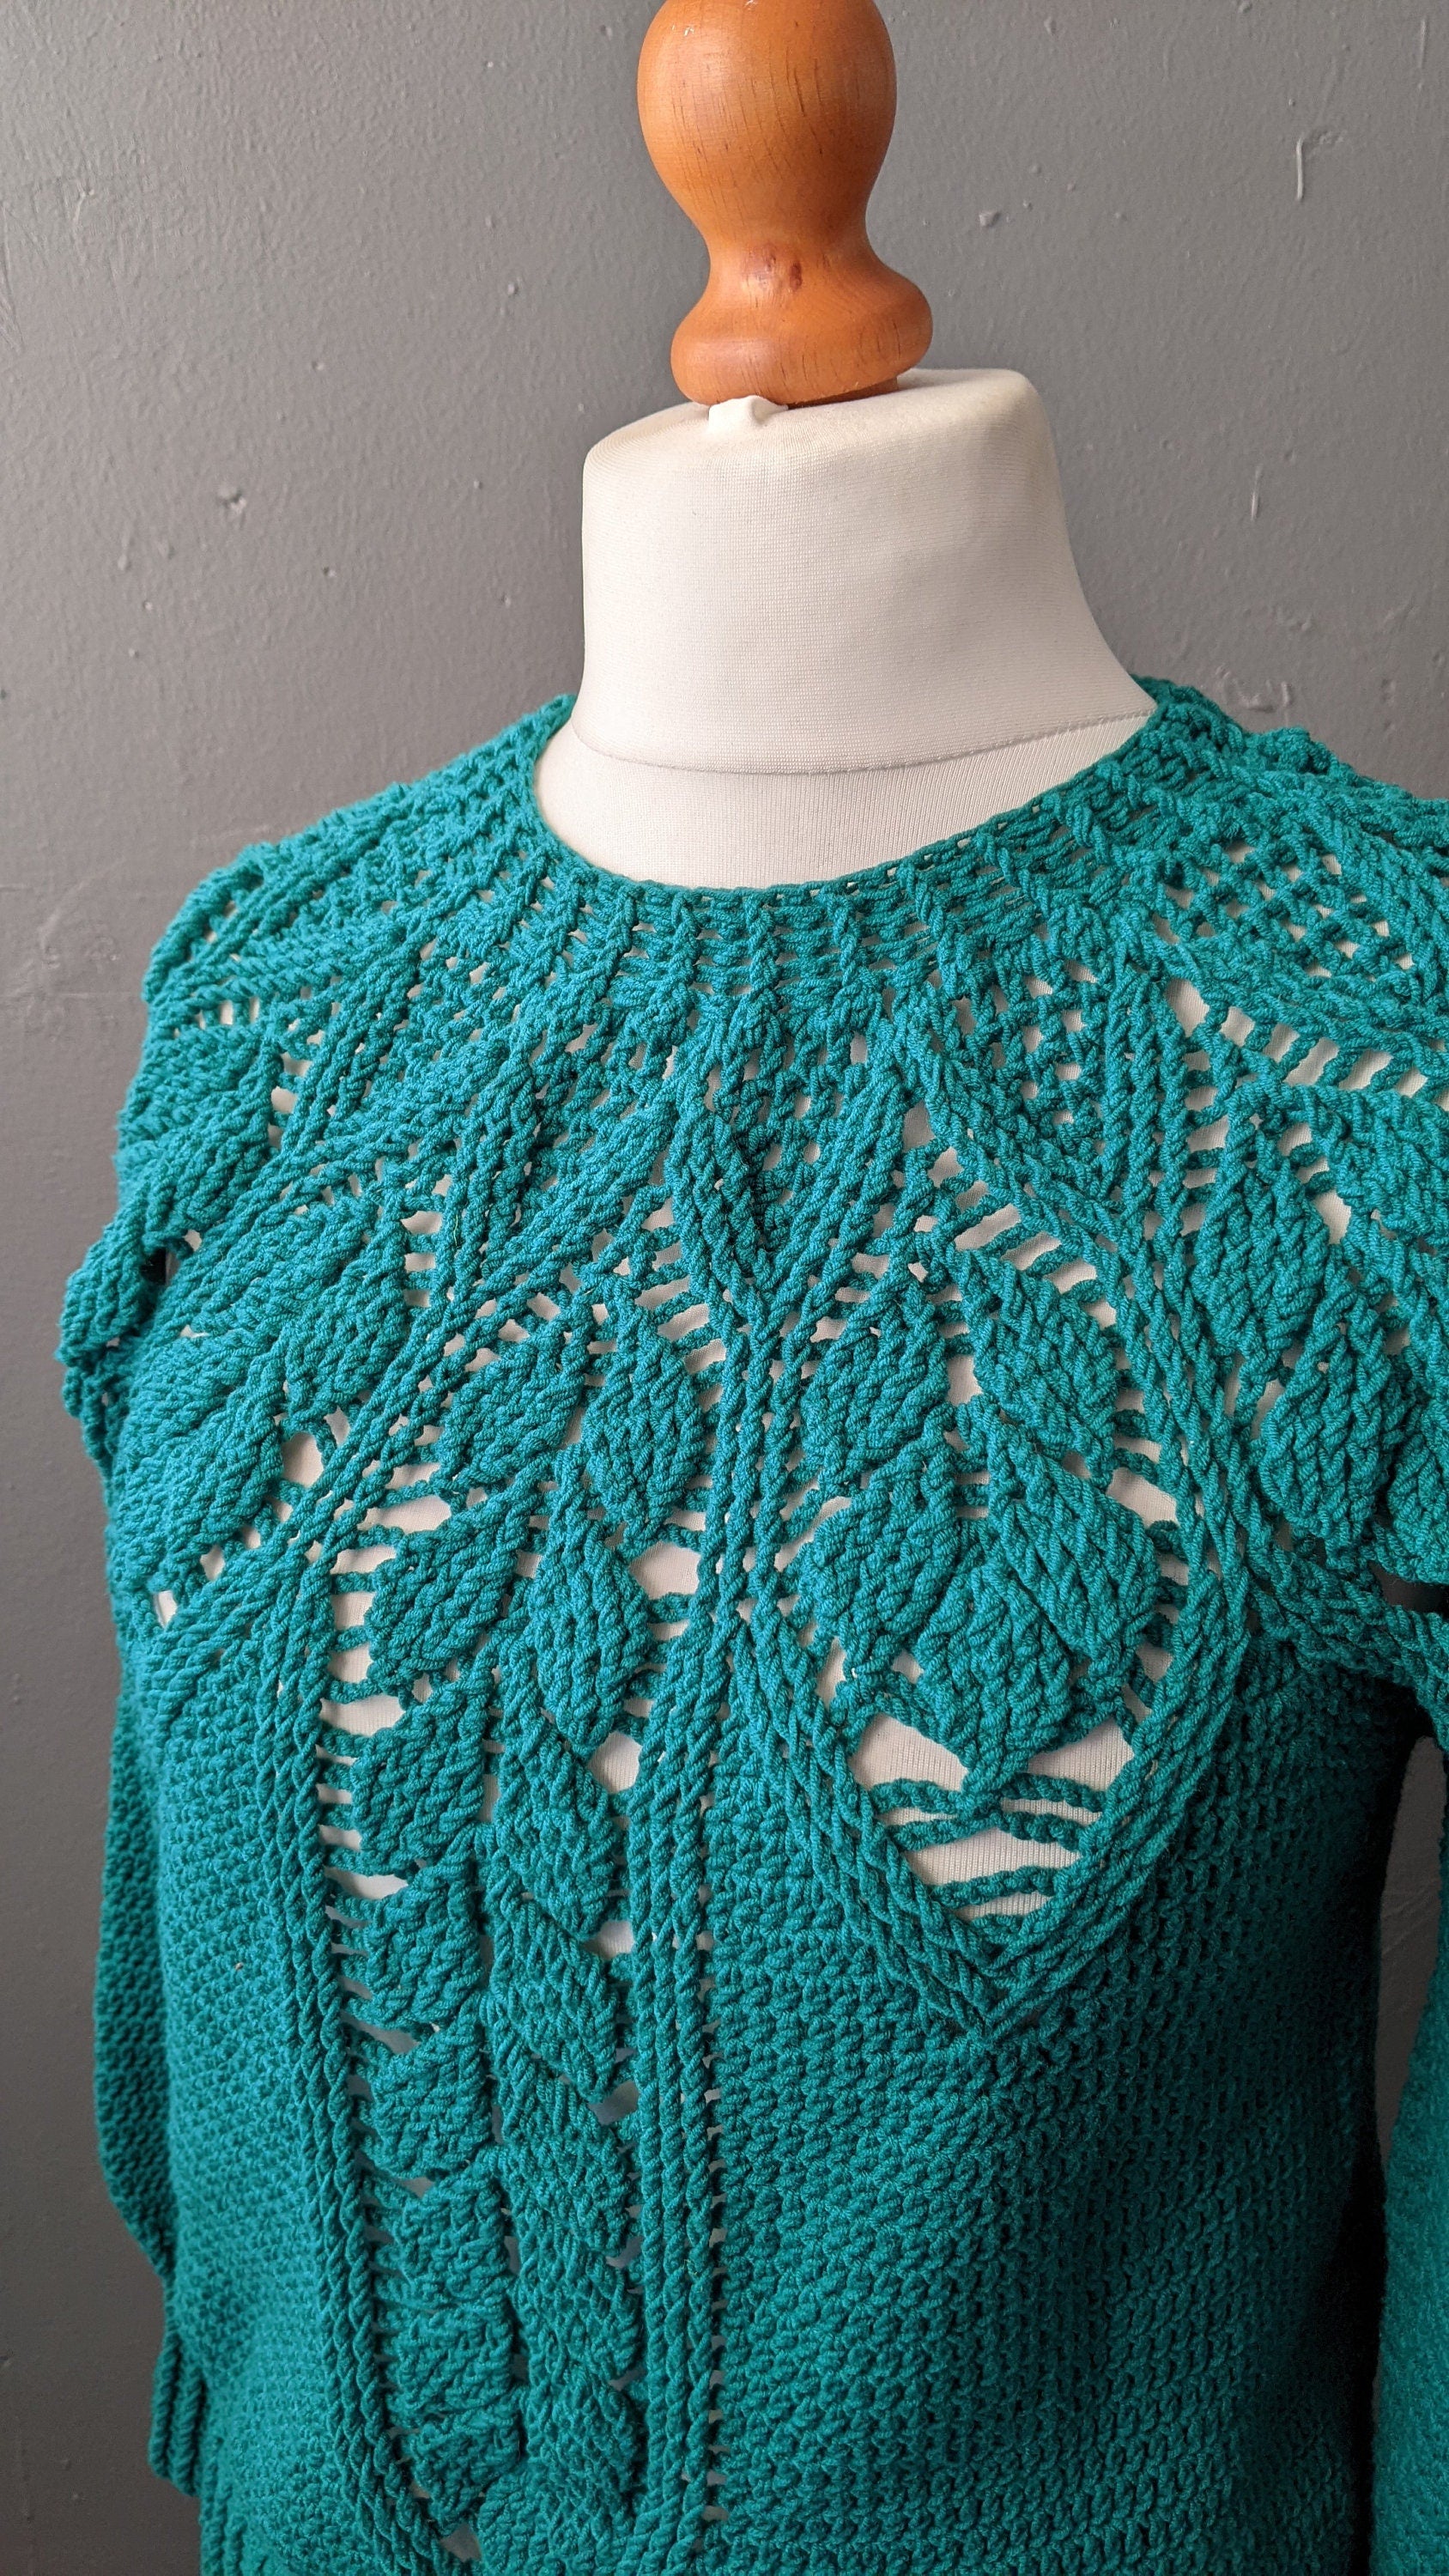 90s Sea Green Crochet Jumper, Size Medium